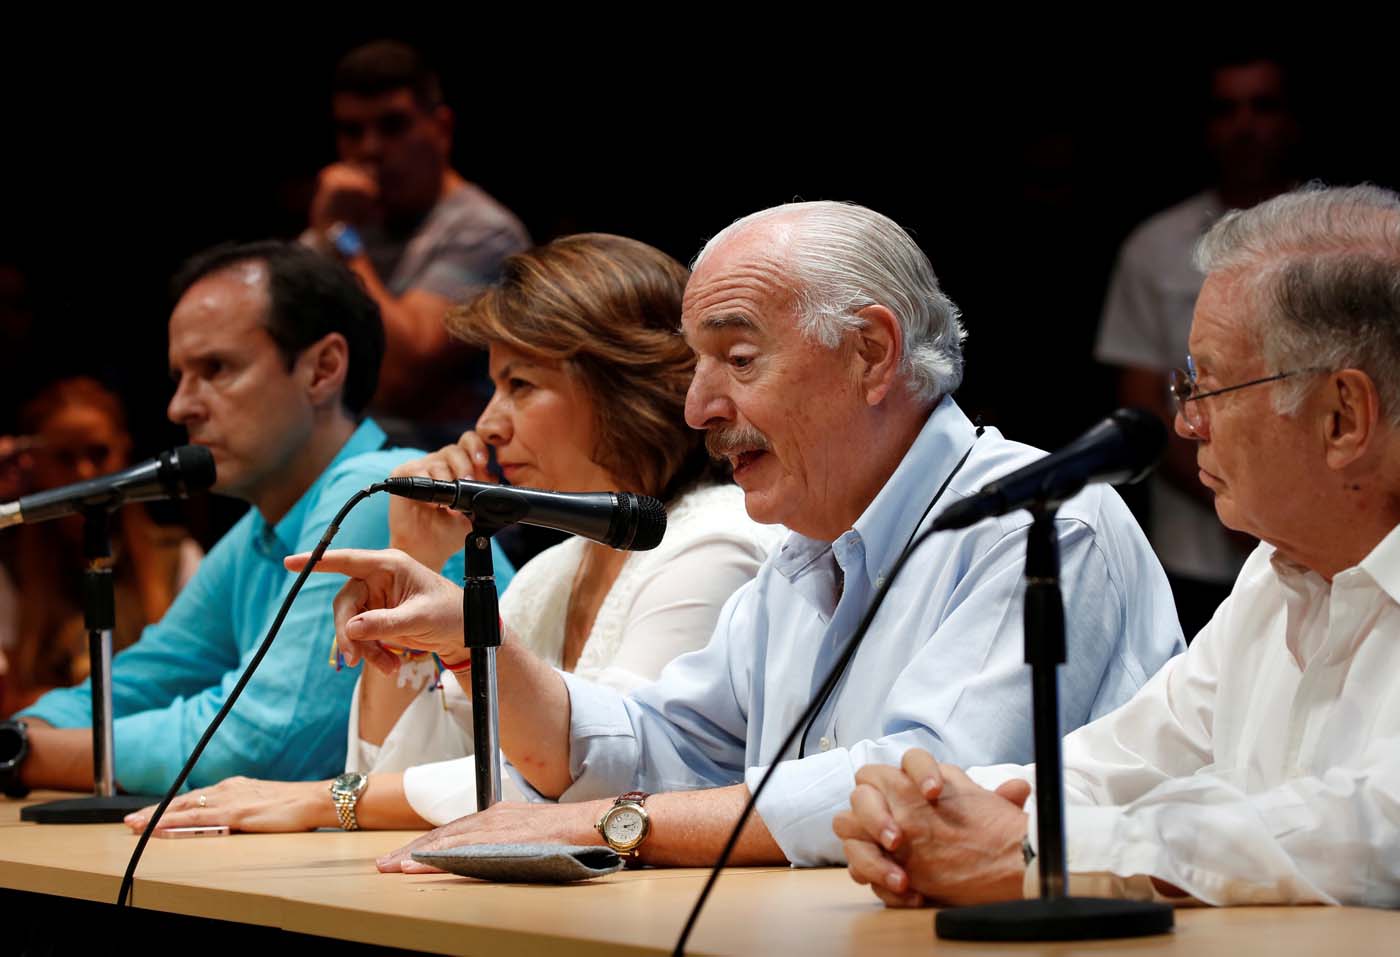 Expresidentes del grupo Idea hacen responsable al gobierno de Maduro de la muerte del concejal Albán (declaración)